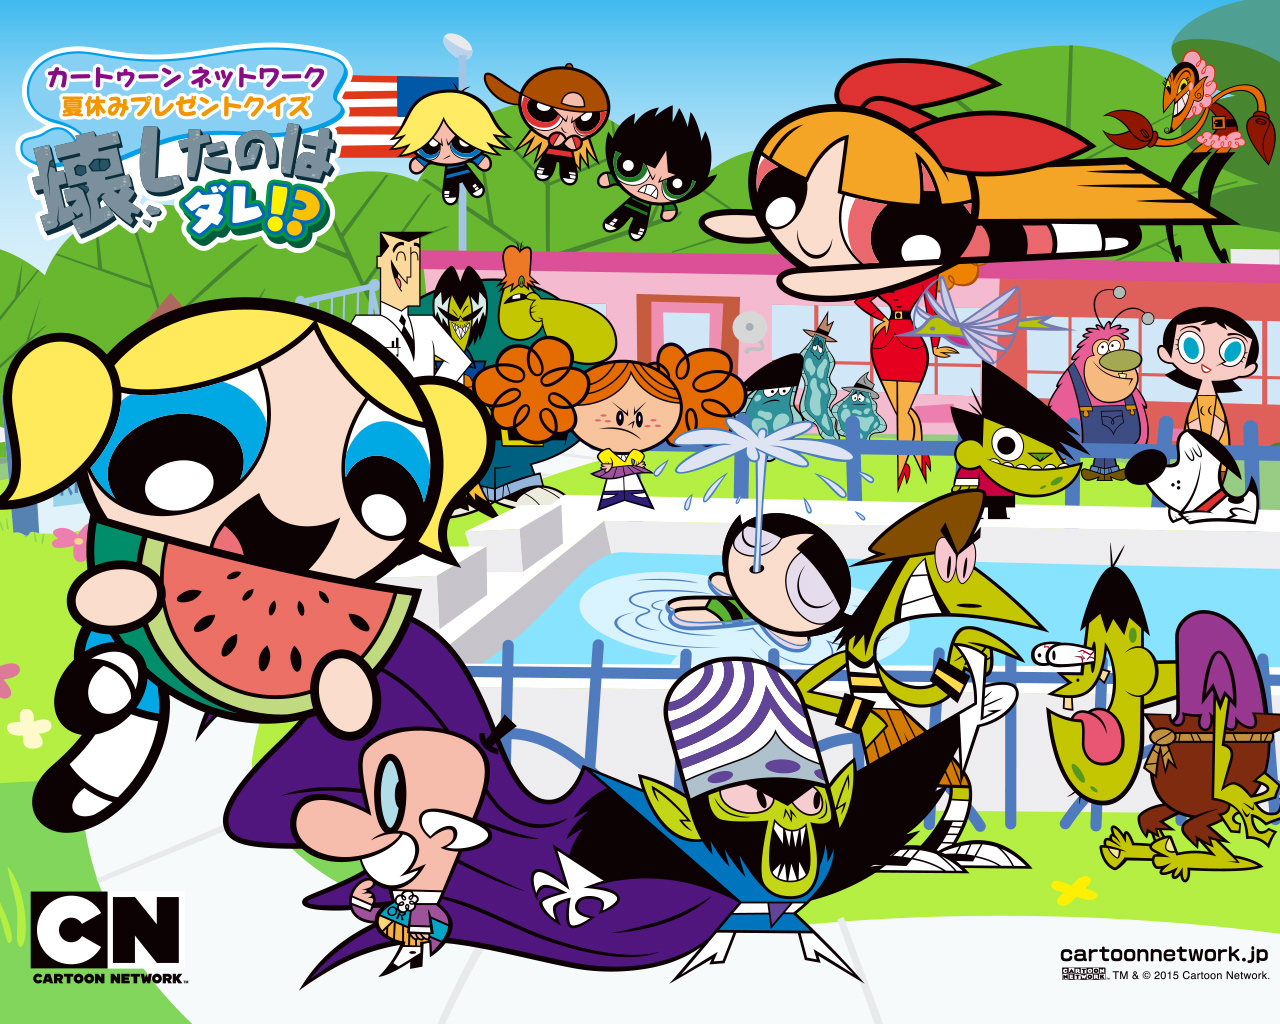 カートゥーン ネットワーク 夏休みプレゼントクイズ 壊したのはダレ カートゥーン ネットワーク 海外アニメと無料ゲームや動画なら Cartoon Network